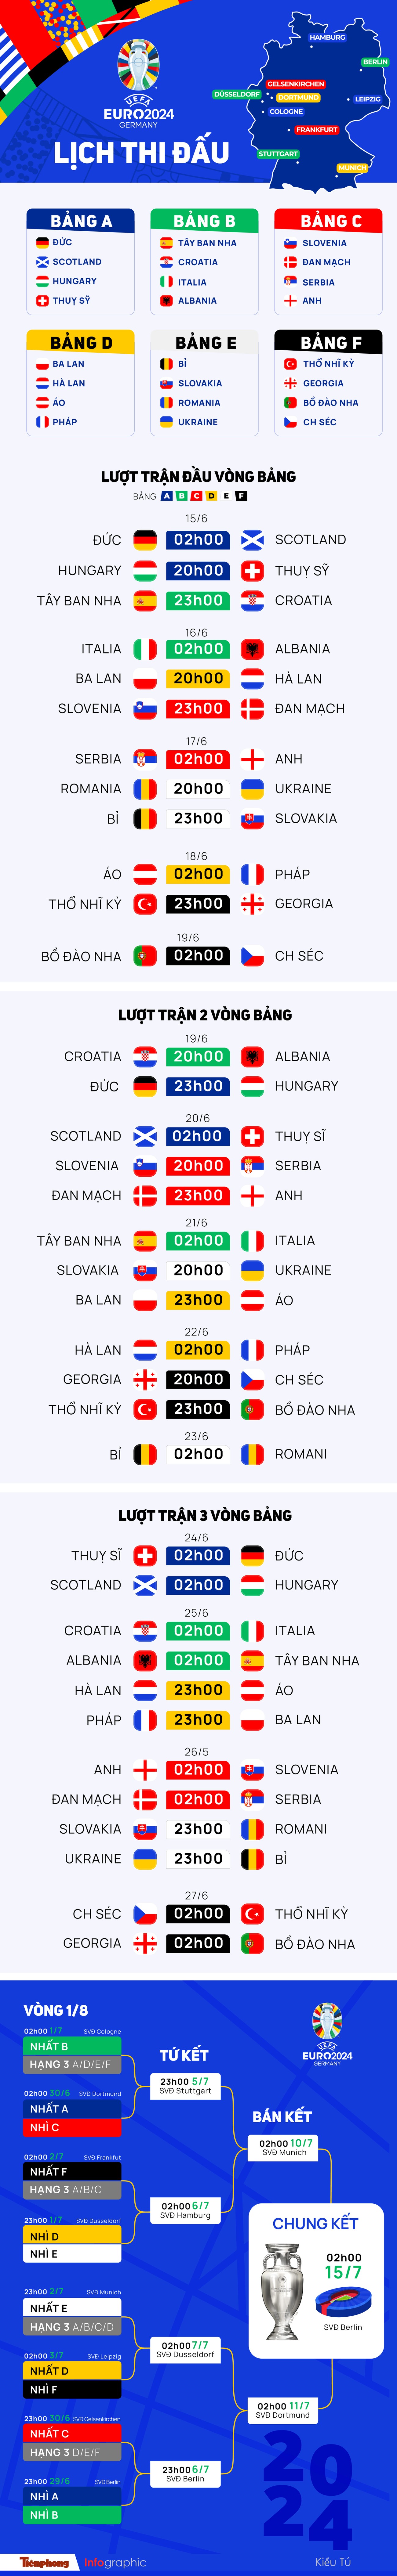 Lịch thi đấu UEFA EURO 2024 mới nhất ảnh 1